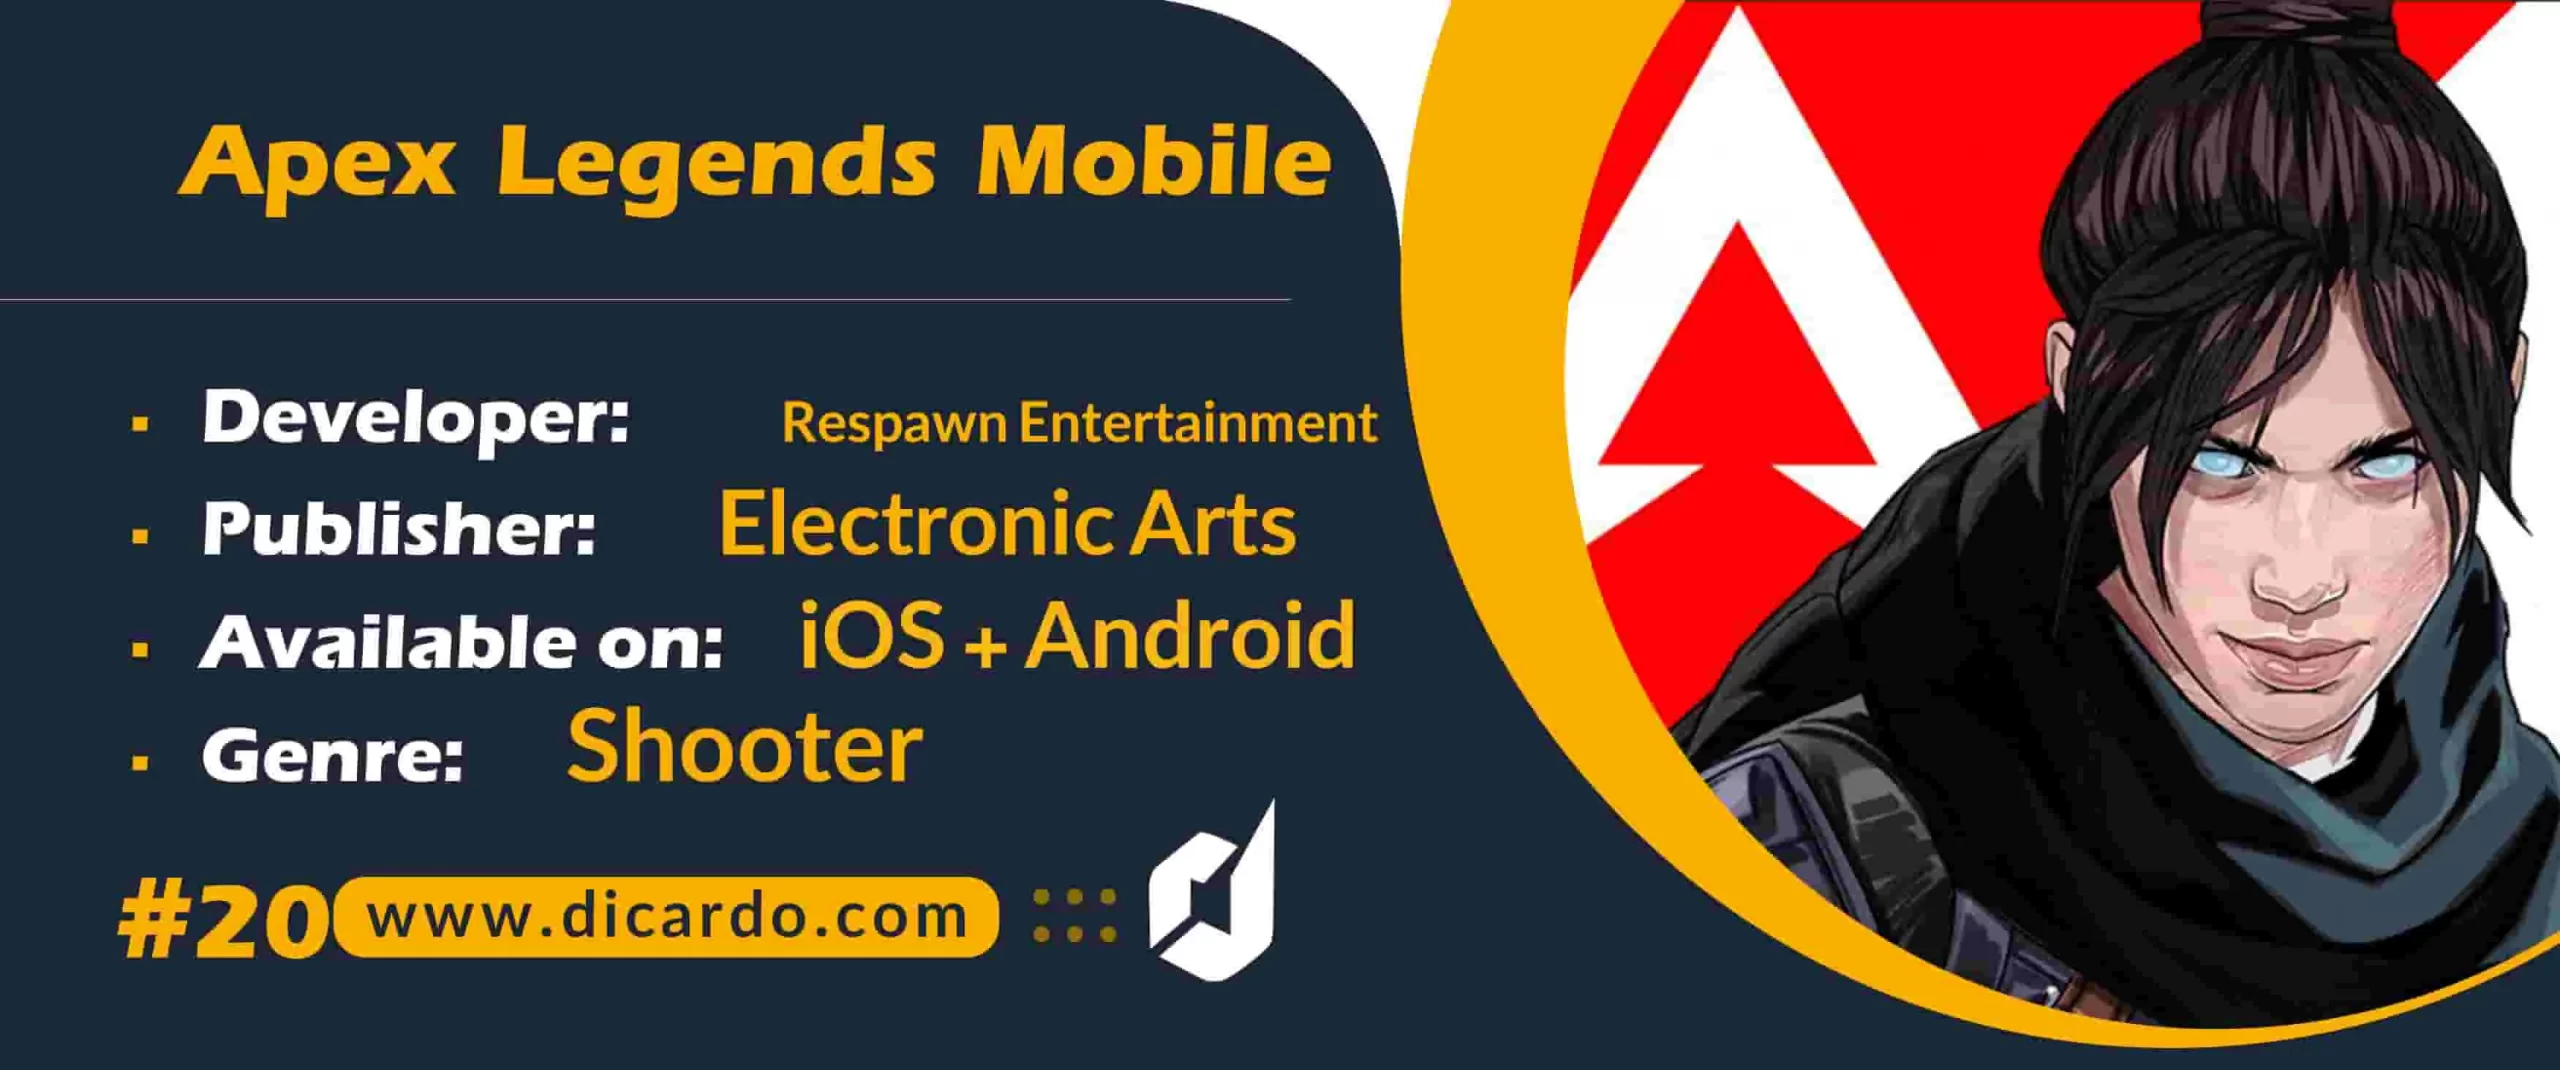 اپکس لجندز موبایل Apex Legends Mobile از بهترین بازیهای تیراندازی در سبک بتل رویال